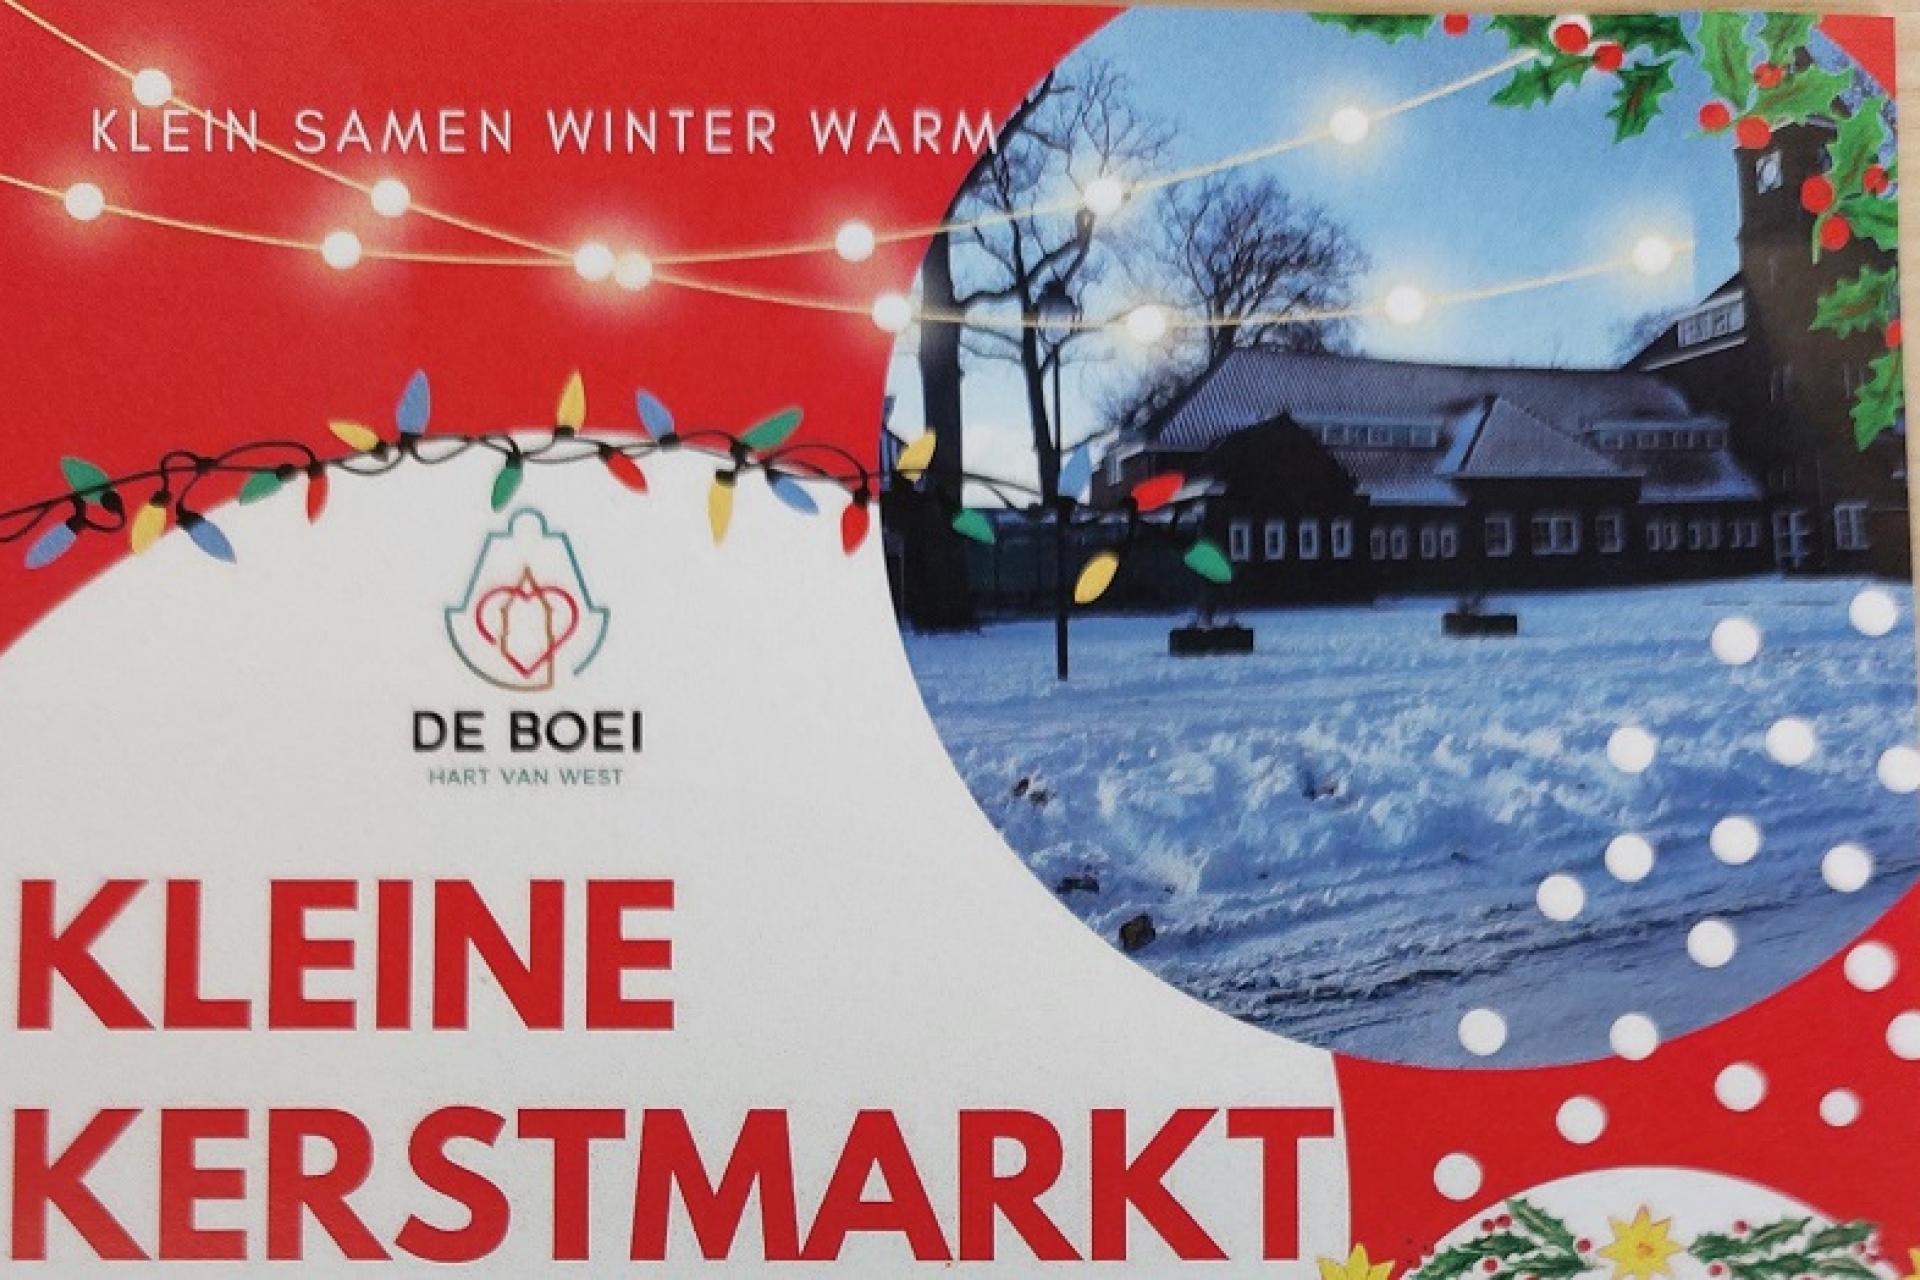 deel van een advertentie van de Kleine kerstmarkt bij De Boei